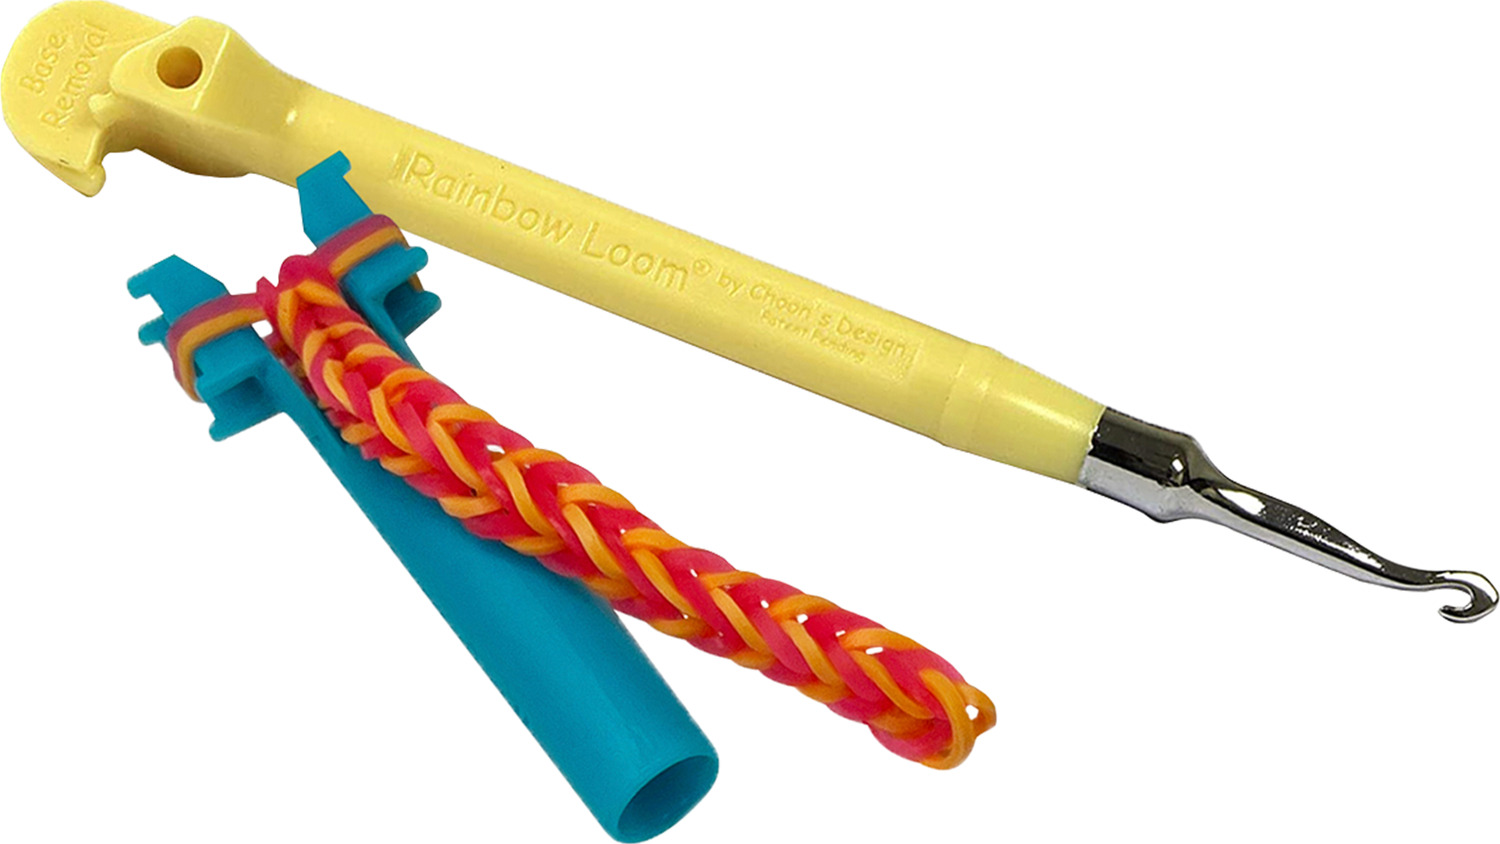 Rainbow Loom Kit - Imagination Toys